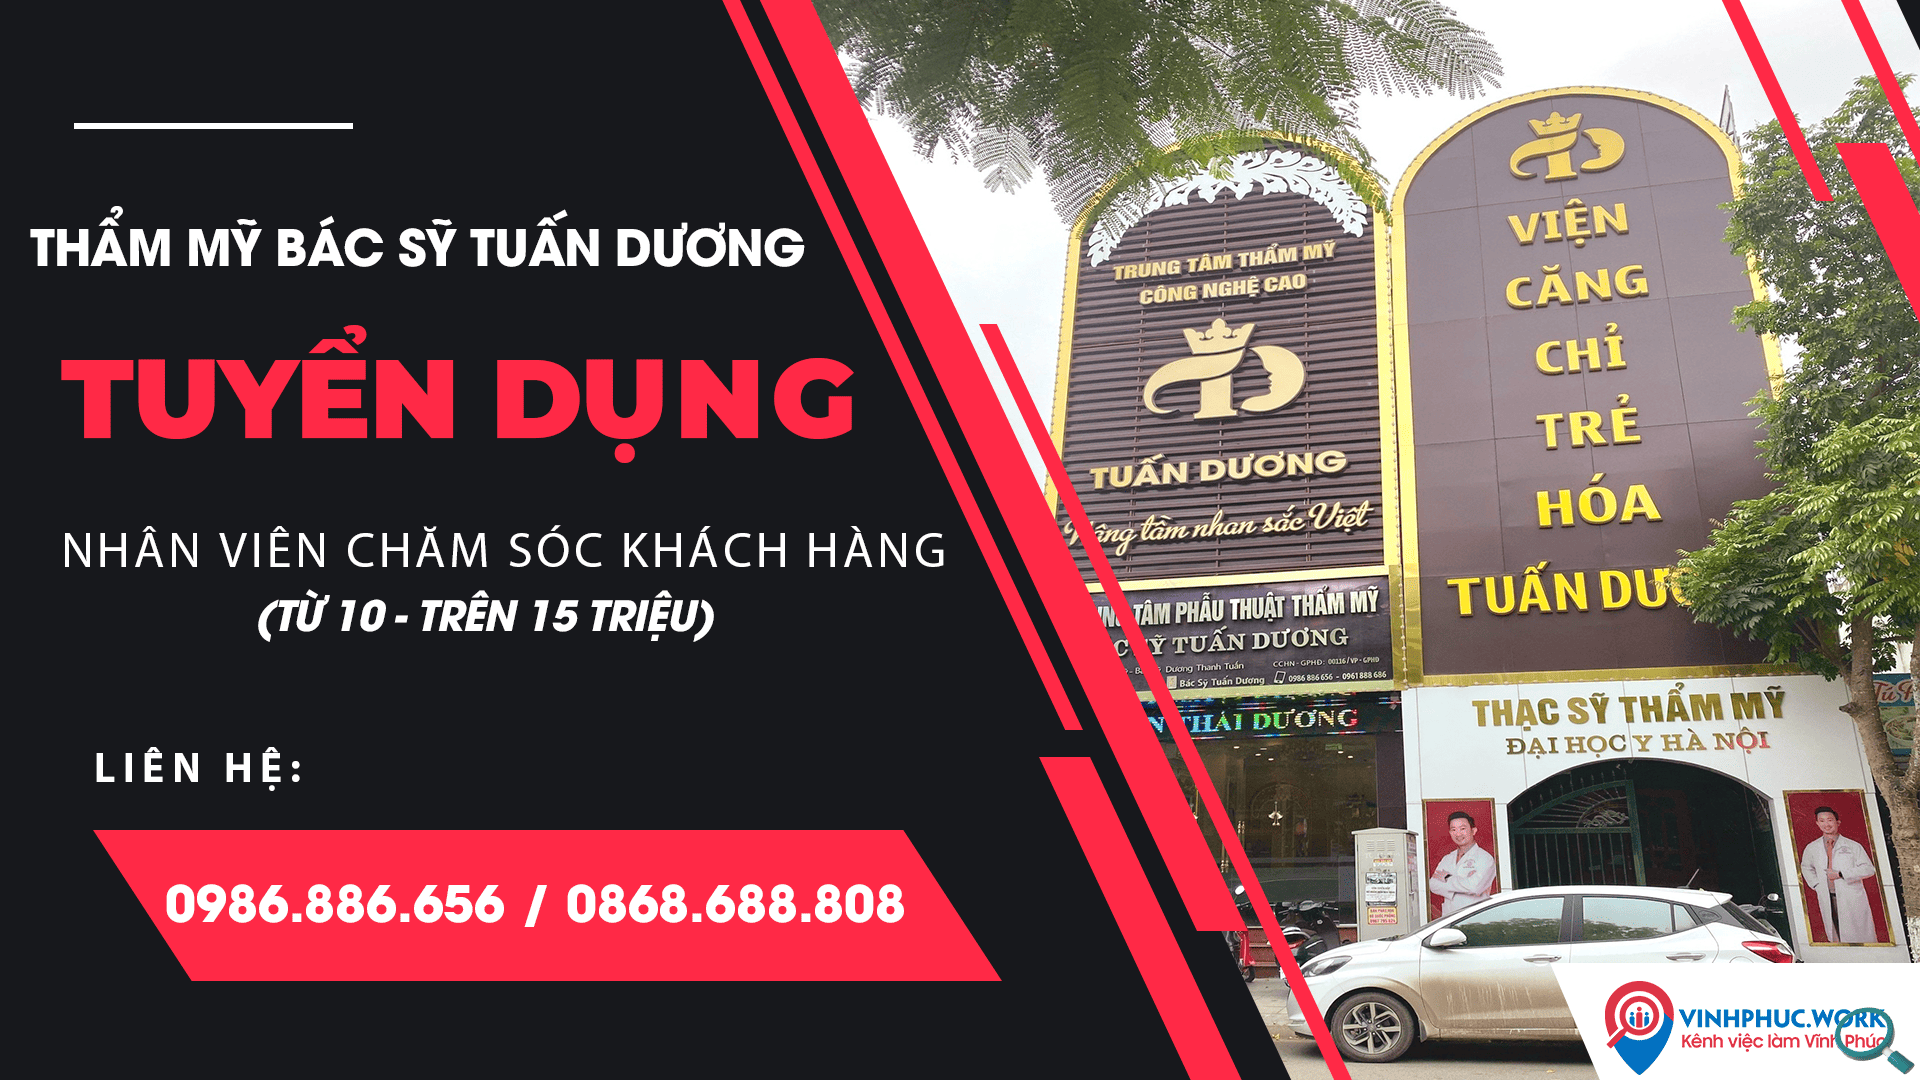 Tham My Bac Sy Tuan Duong Thong Bao Tuyen Dung Nhan Vien Cskh 3